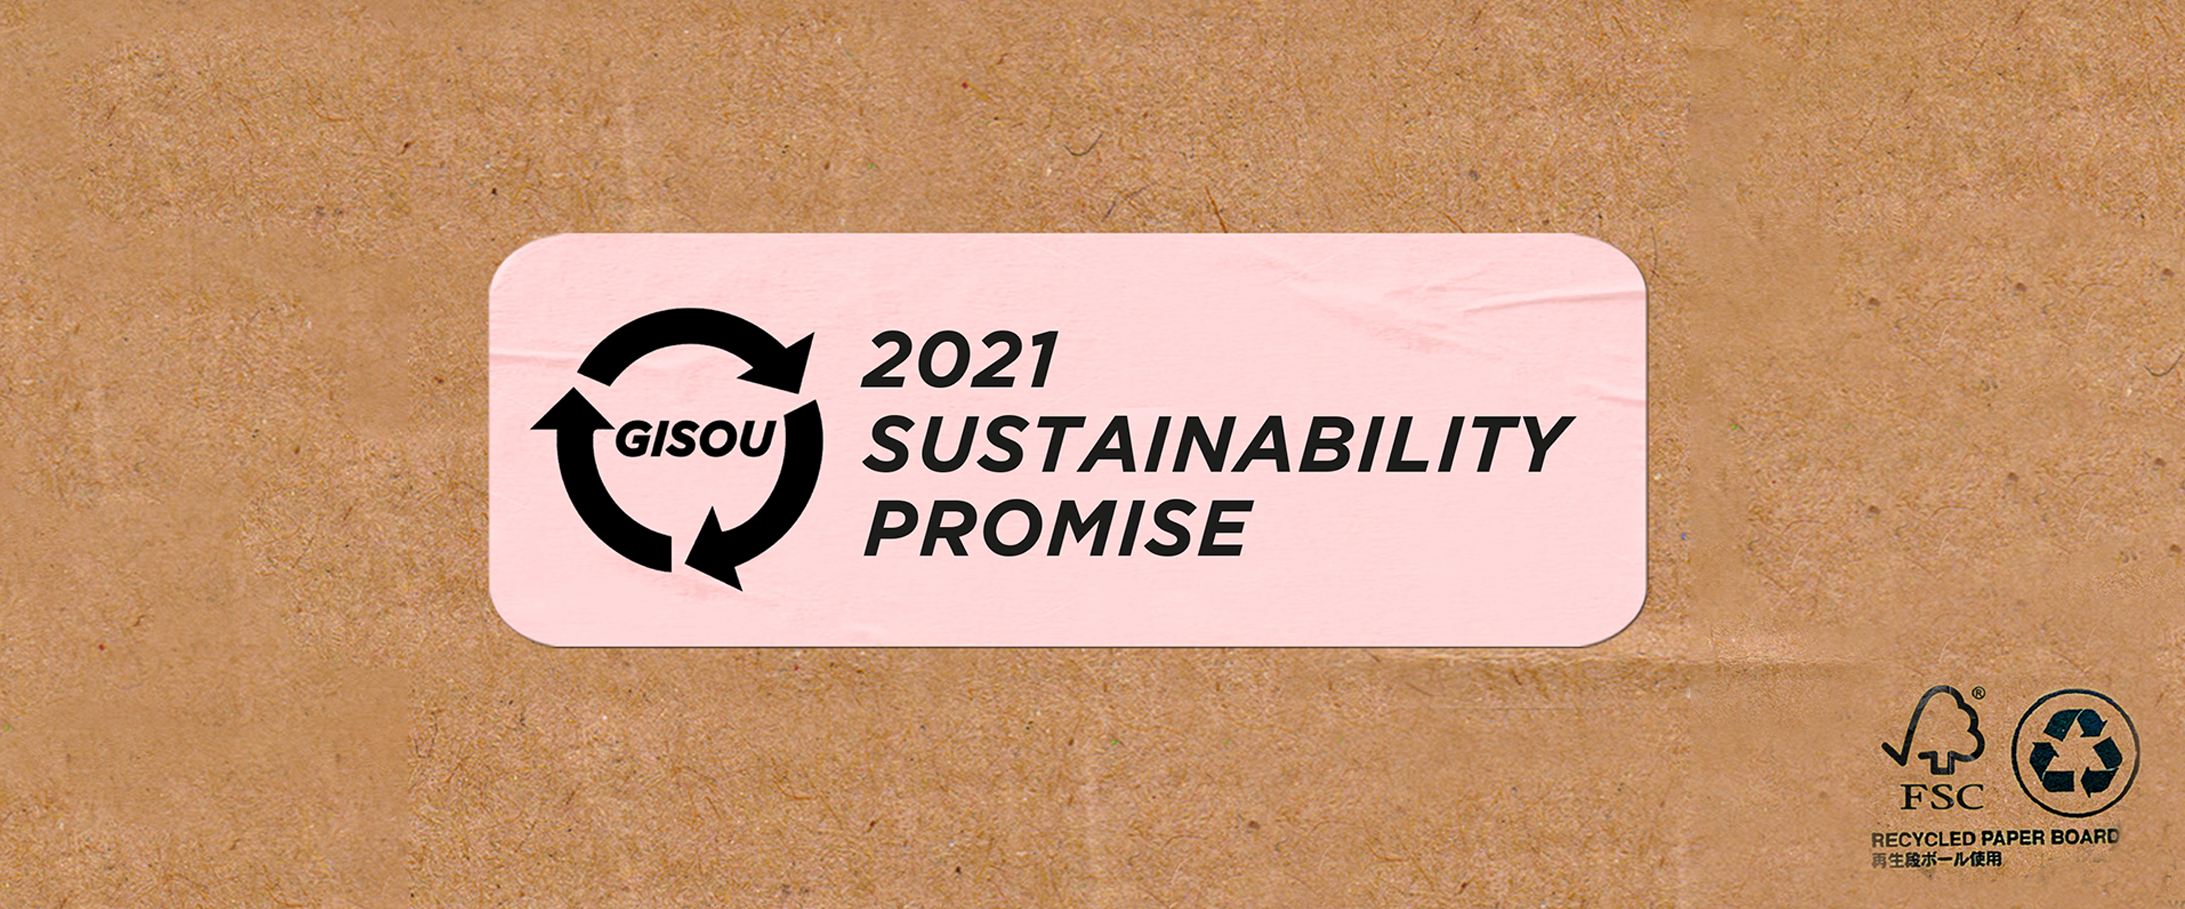 Gisou Sustainability Update & Promise 2021 